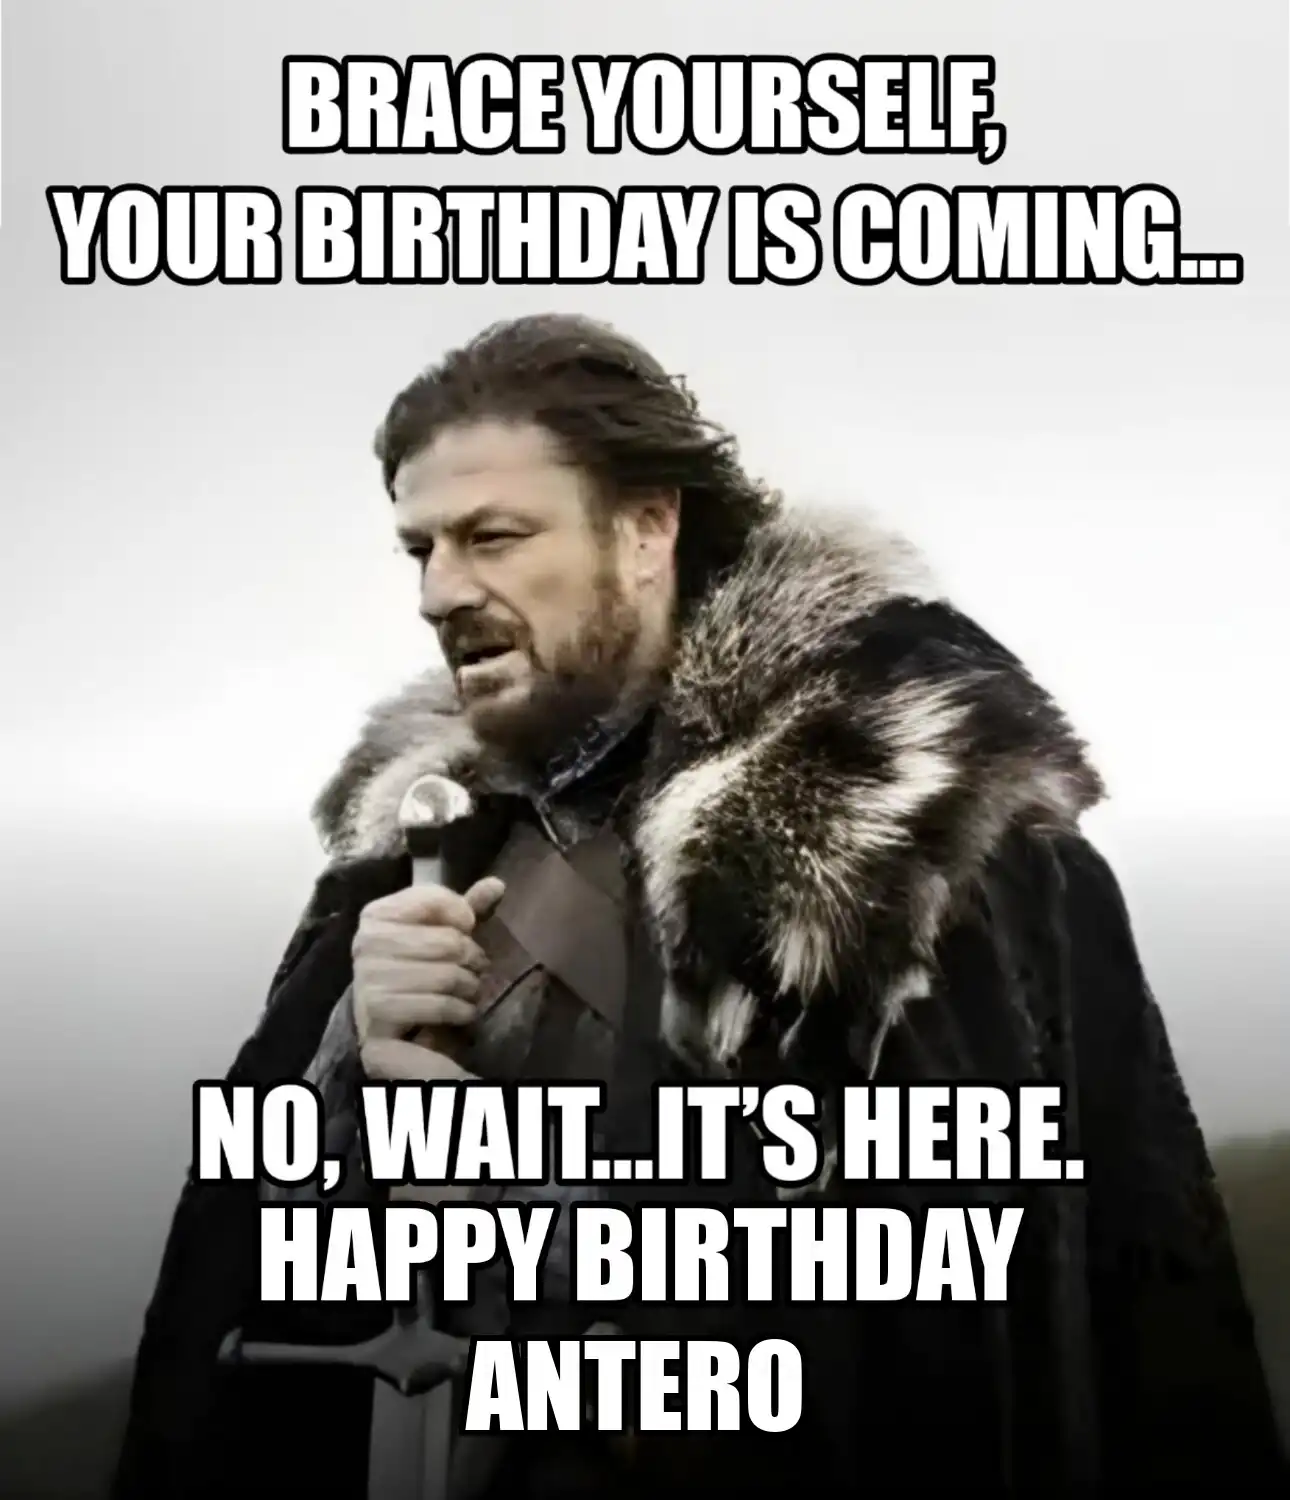 Happy Birthday Antero Brace Yourself Your Birthday Is Coming Meme